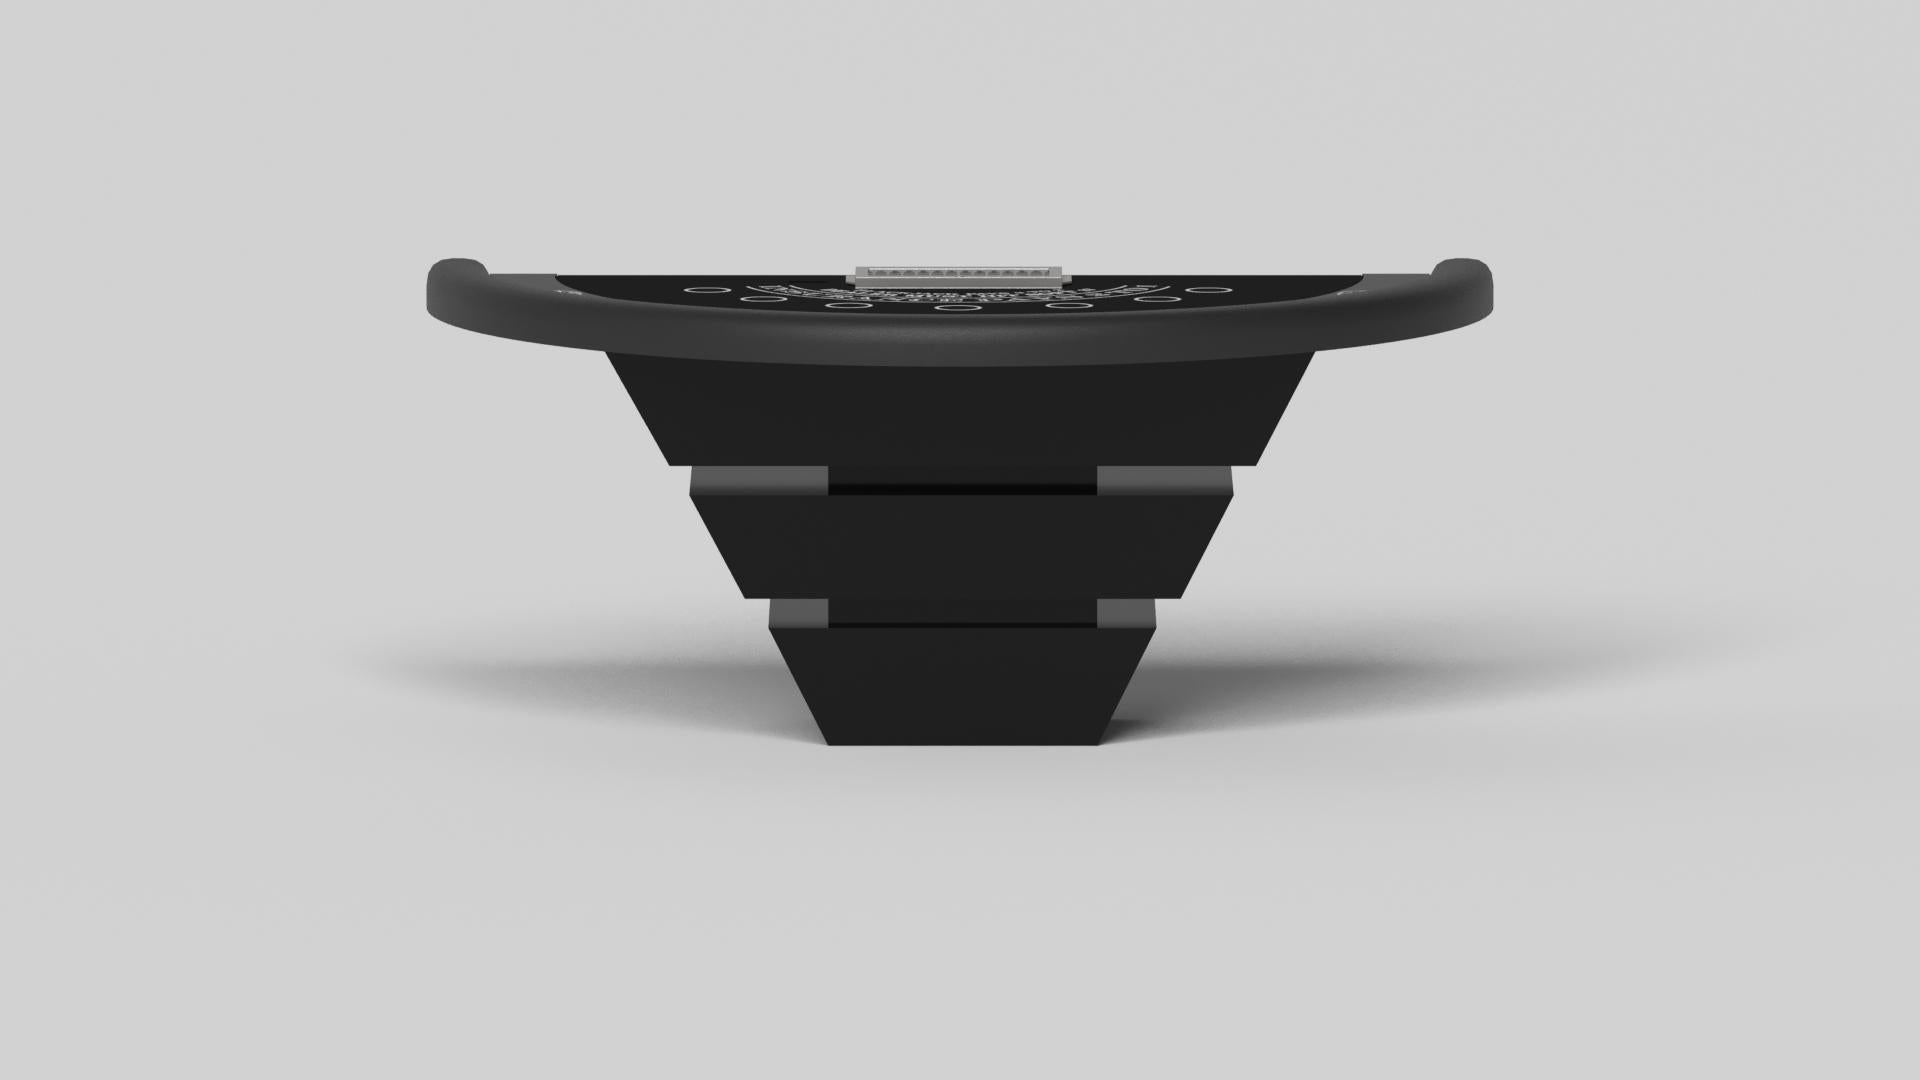 Américain Elevate Customs Louve Black Jack Tables /Solid Pantone Black Color in 7'4